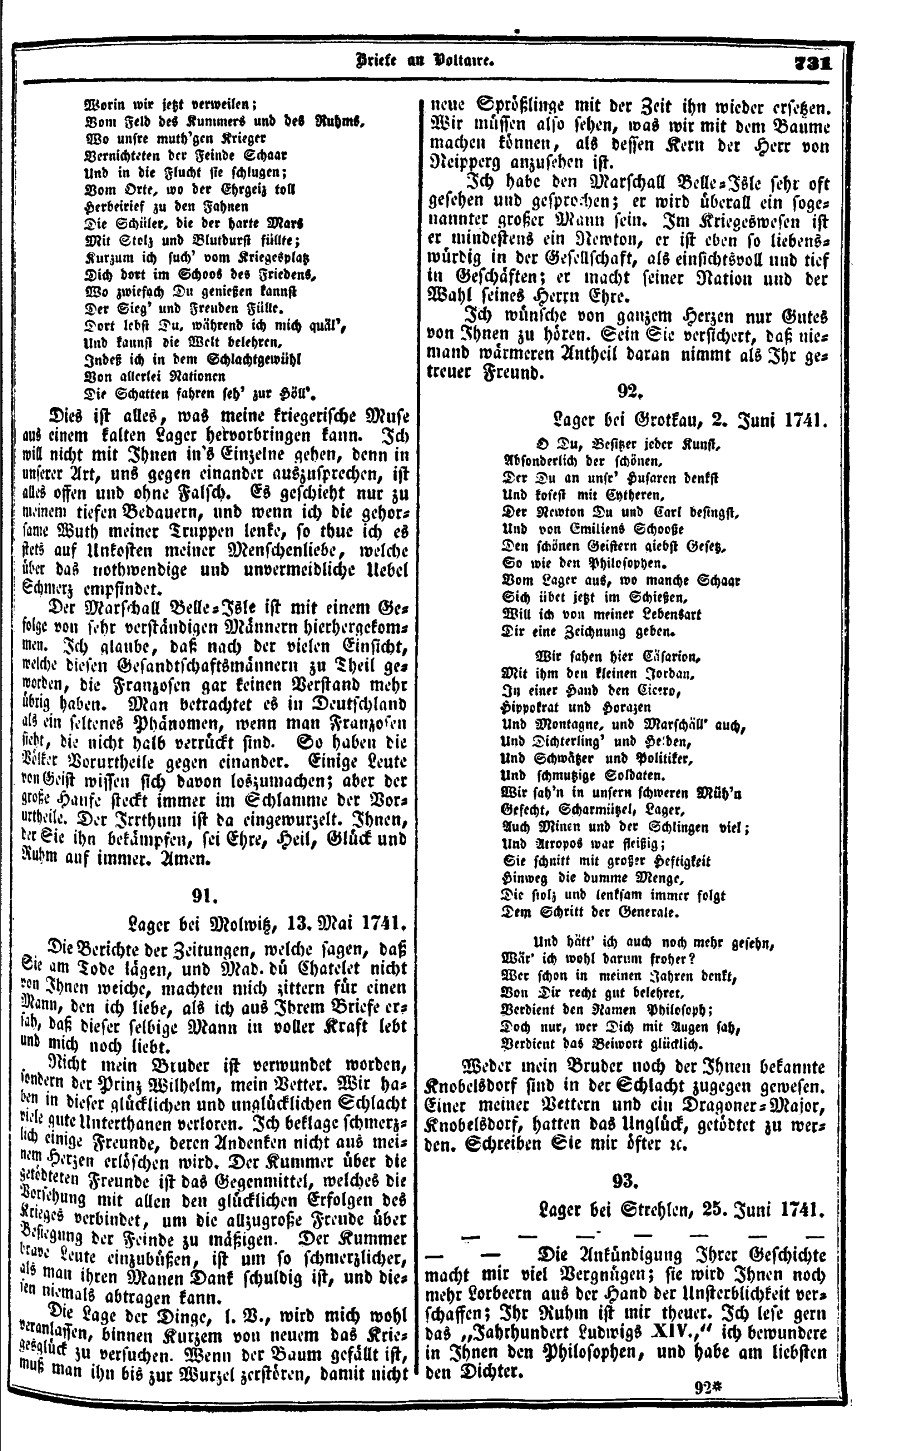 S. 731, Obj. 4